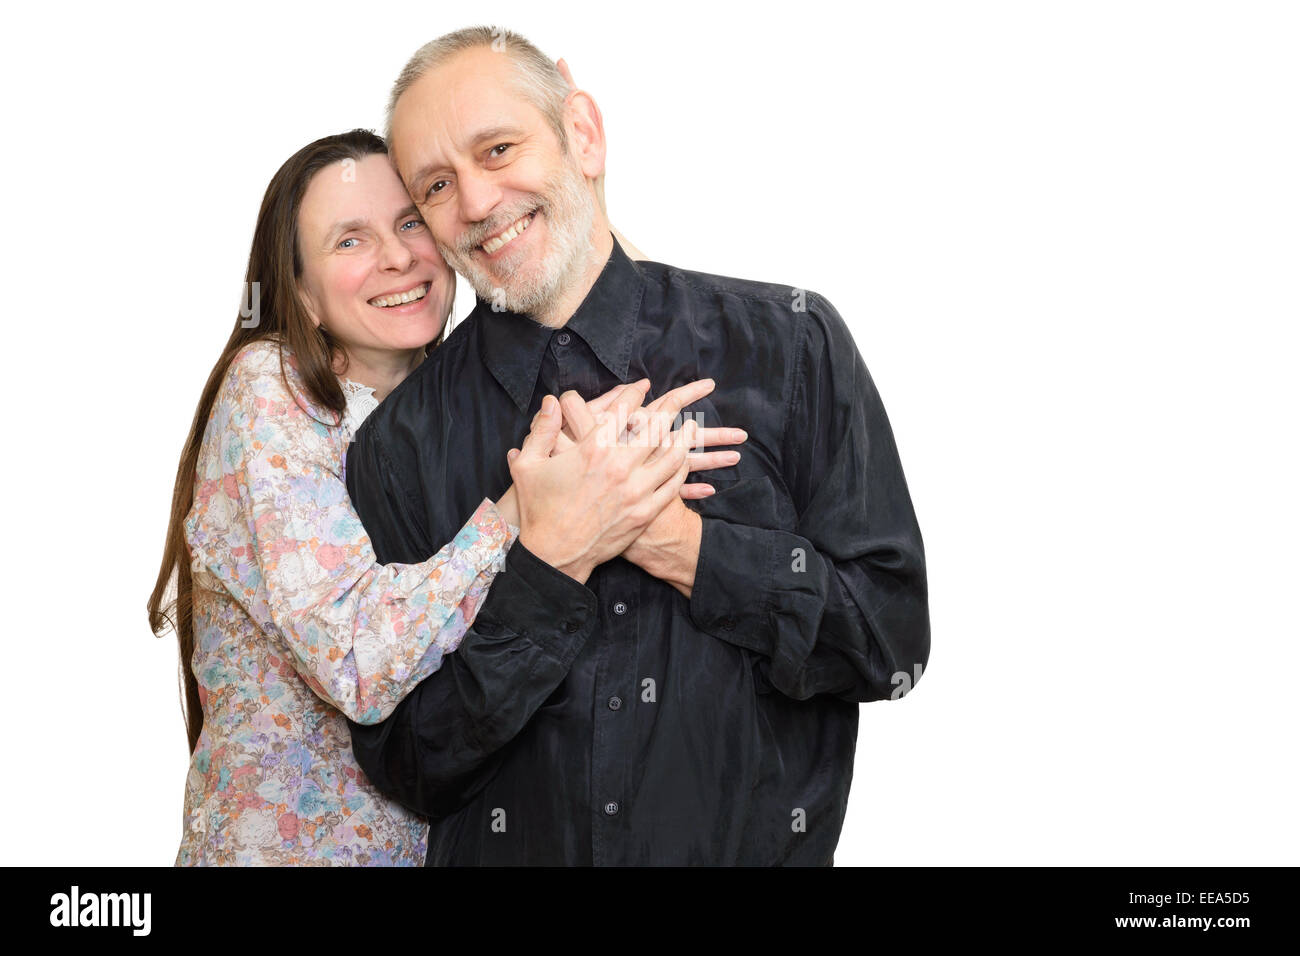 Glücklich Erwachsenen Mann und Frau mit langem Haar Lächeln für S. Valentin Tag oder ein Jubiläum und umarmen einander. Isoliert auf whi Stockfoto